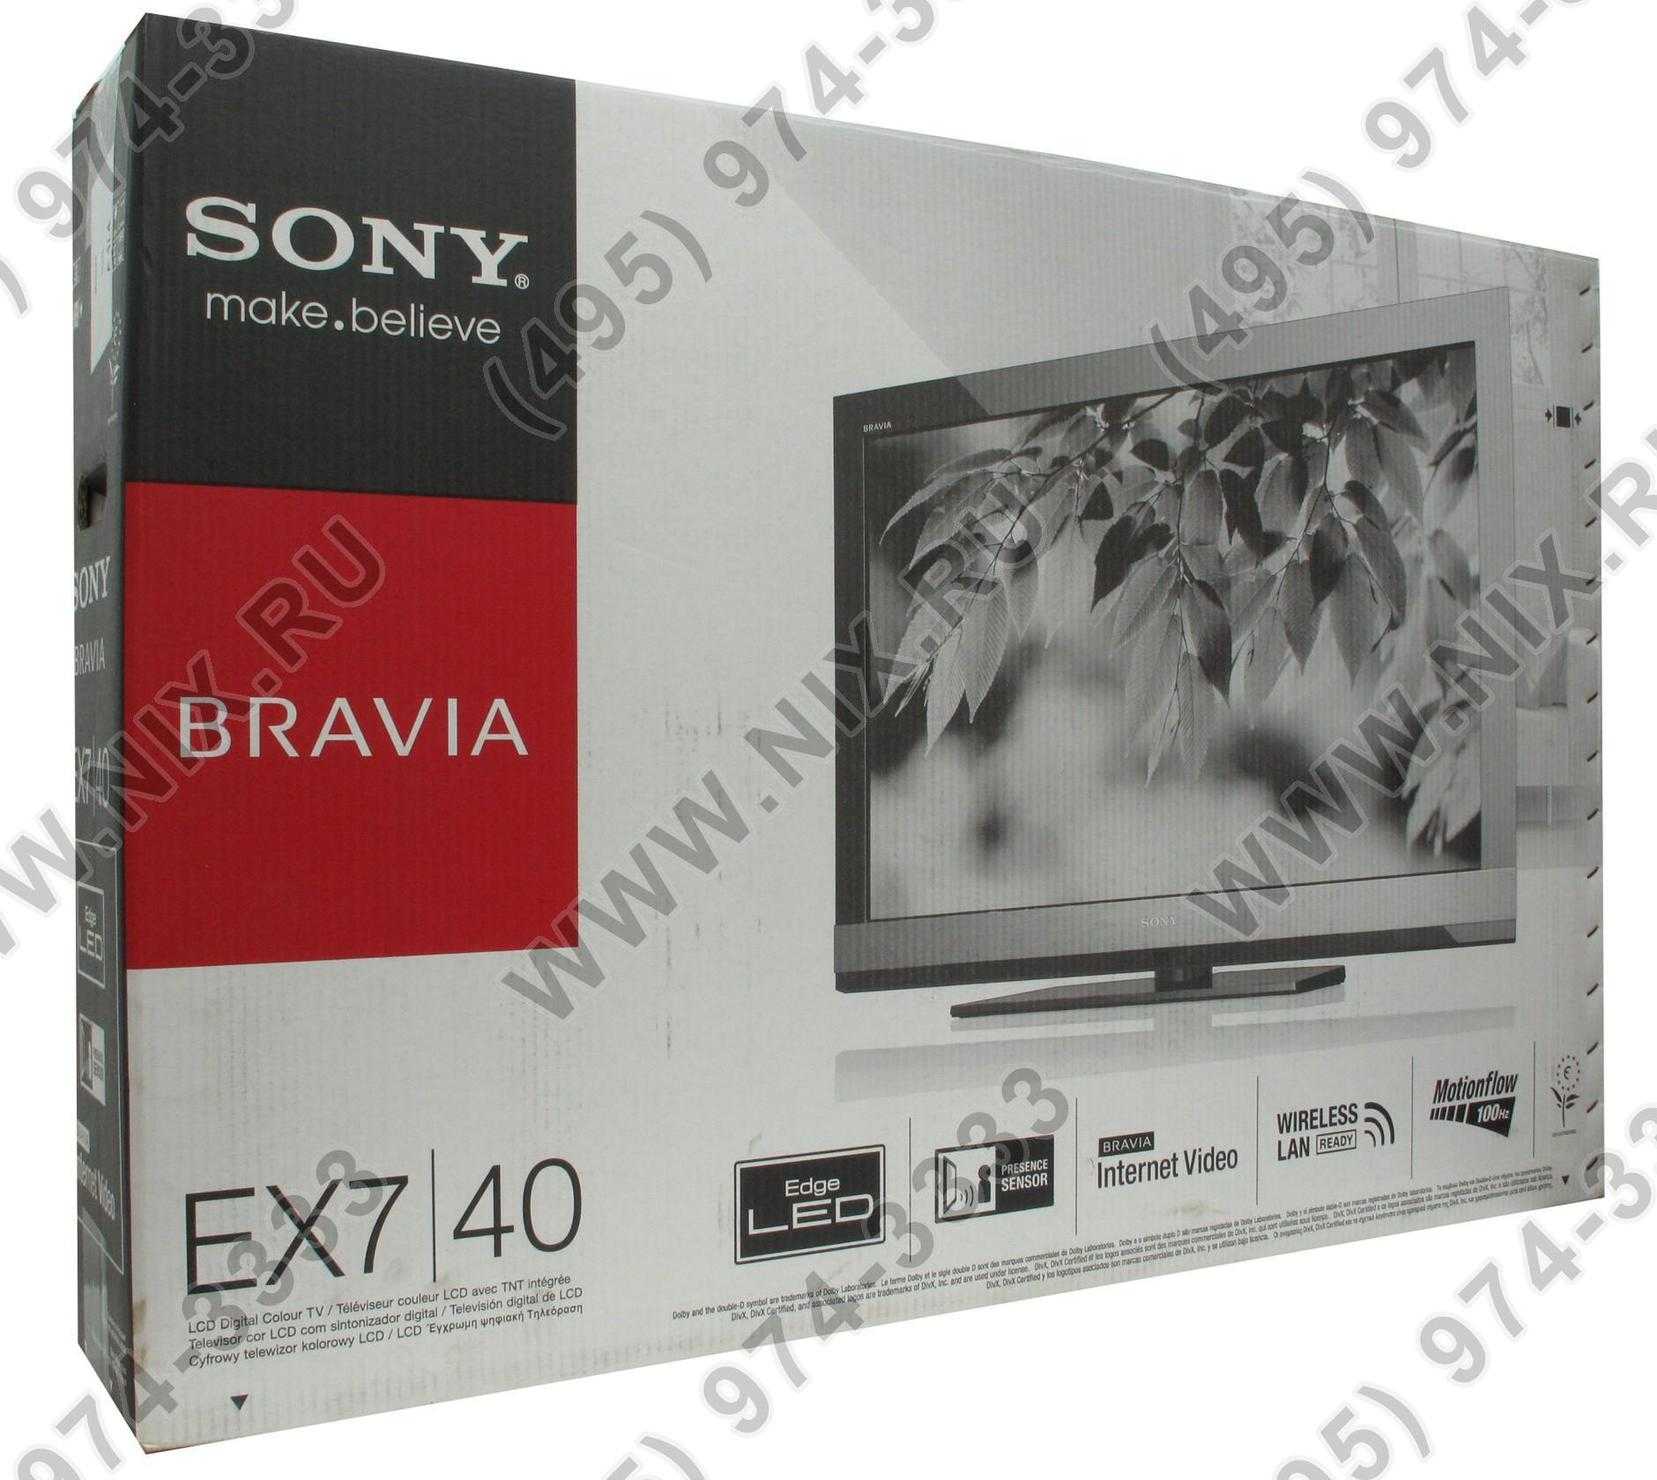 Sony kdl-46ex700 купить по акционной цене , отзывы и обзоры.